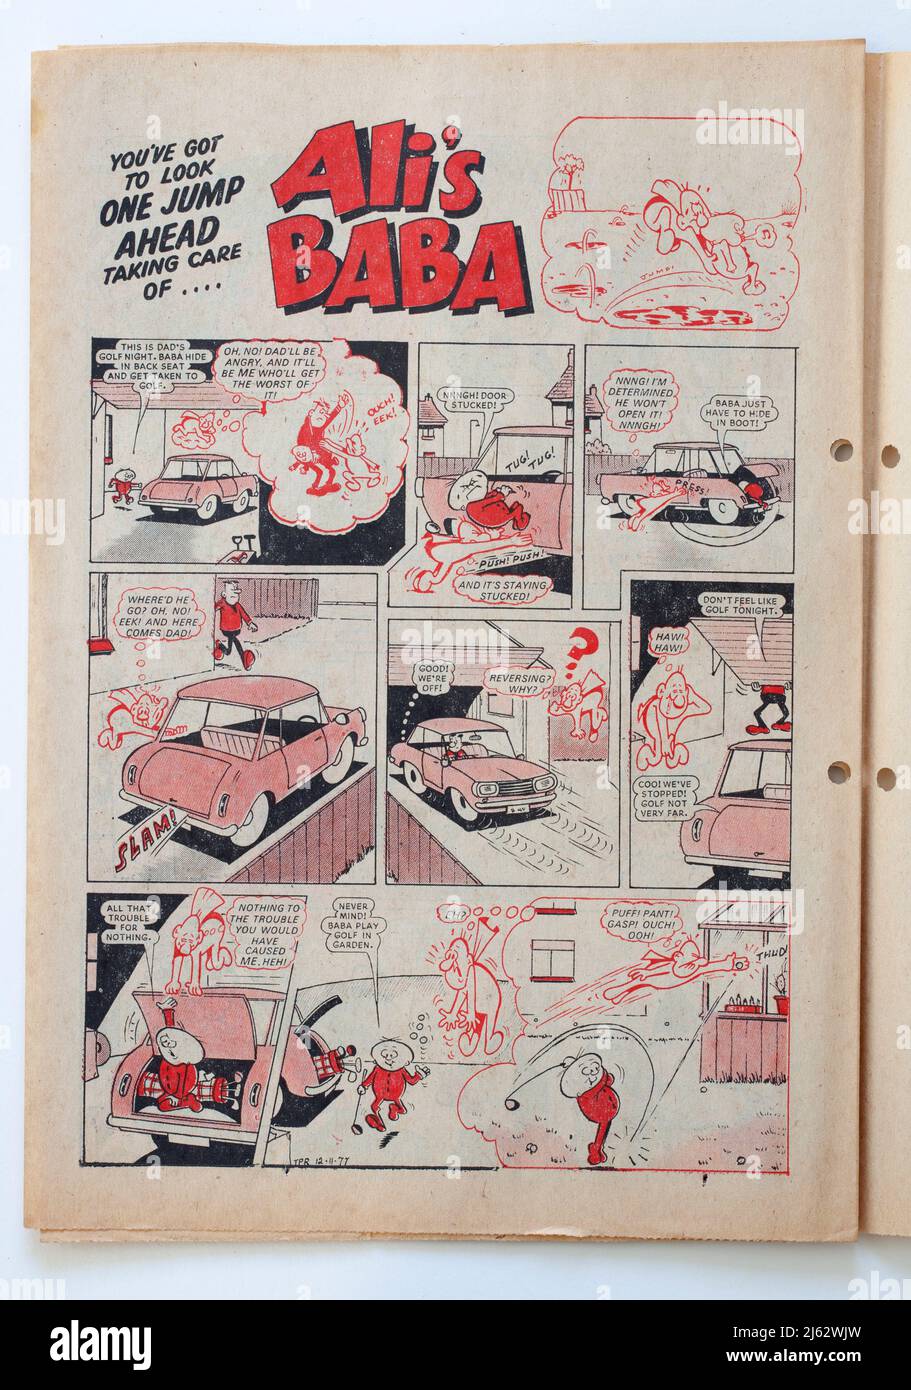 Alis Baba Cartoon Strip von 1970s Sparky Comic Stockfoto